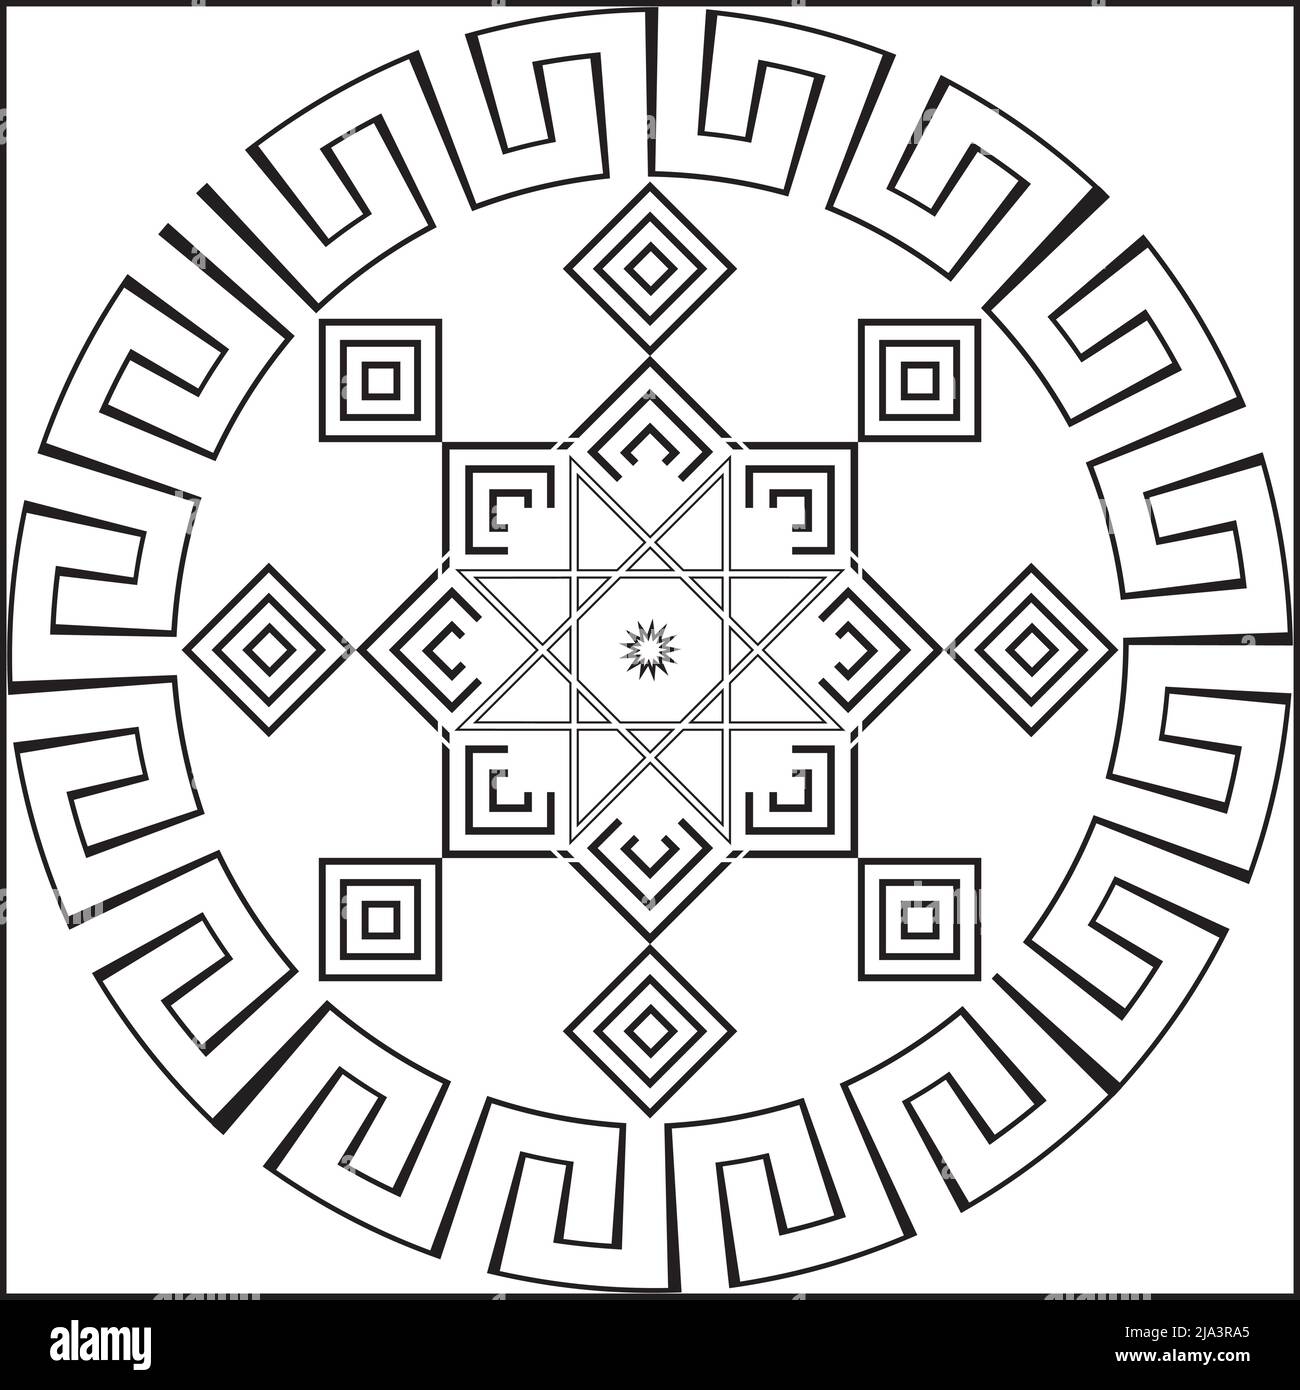 Vektor-Illustration von runden schwarzen abstrakten folklorischen nahtlose Muster auf weißem Hintergrund. Vektorgrafik Stock Vektor